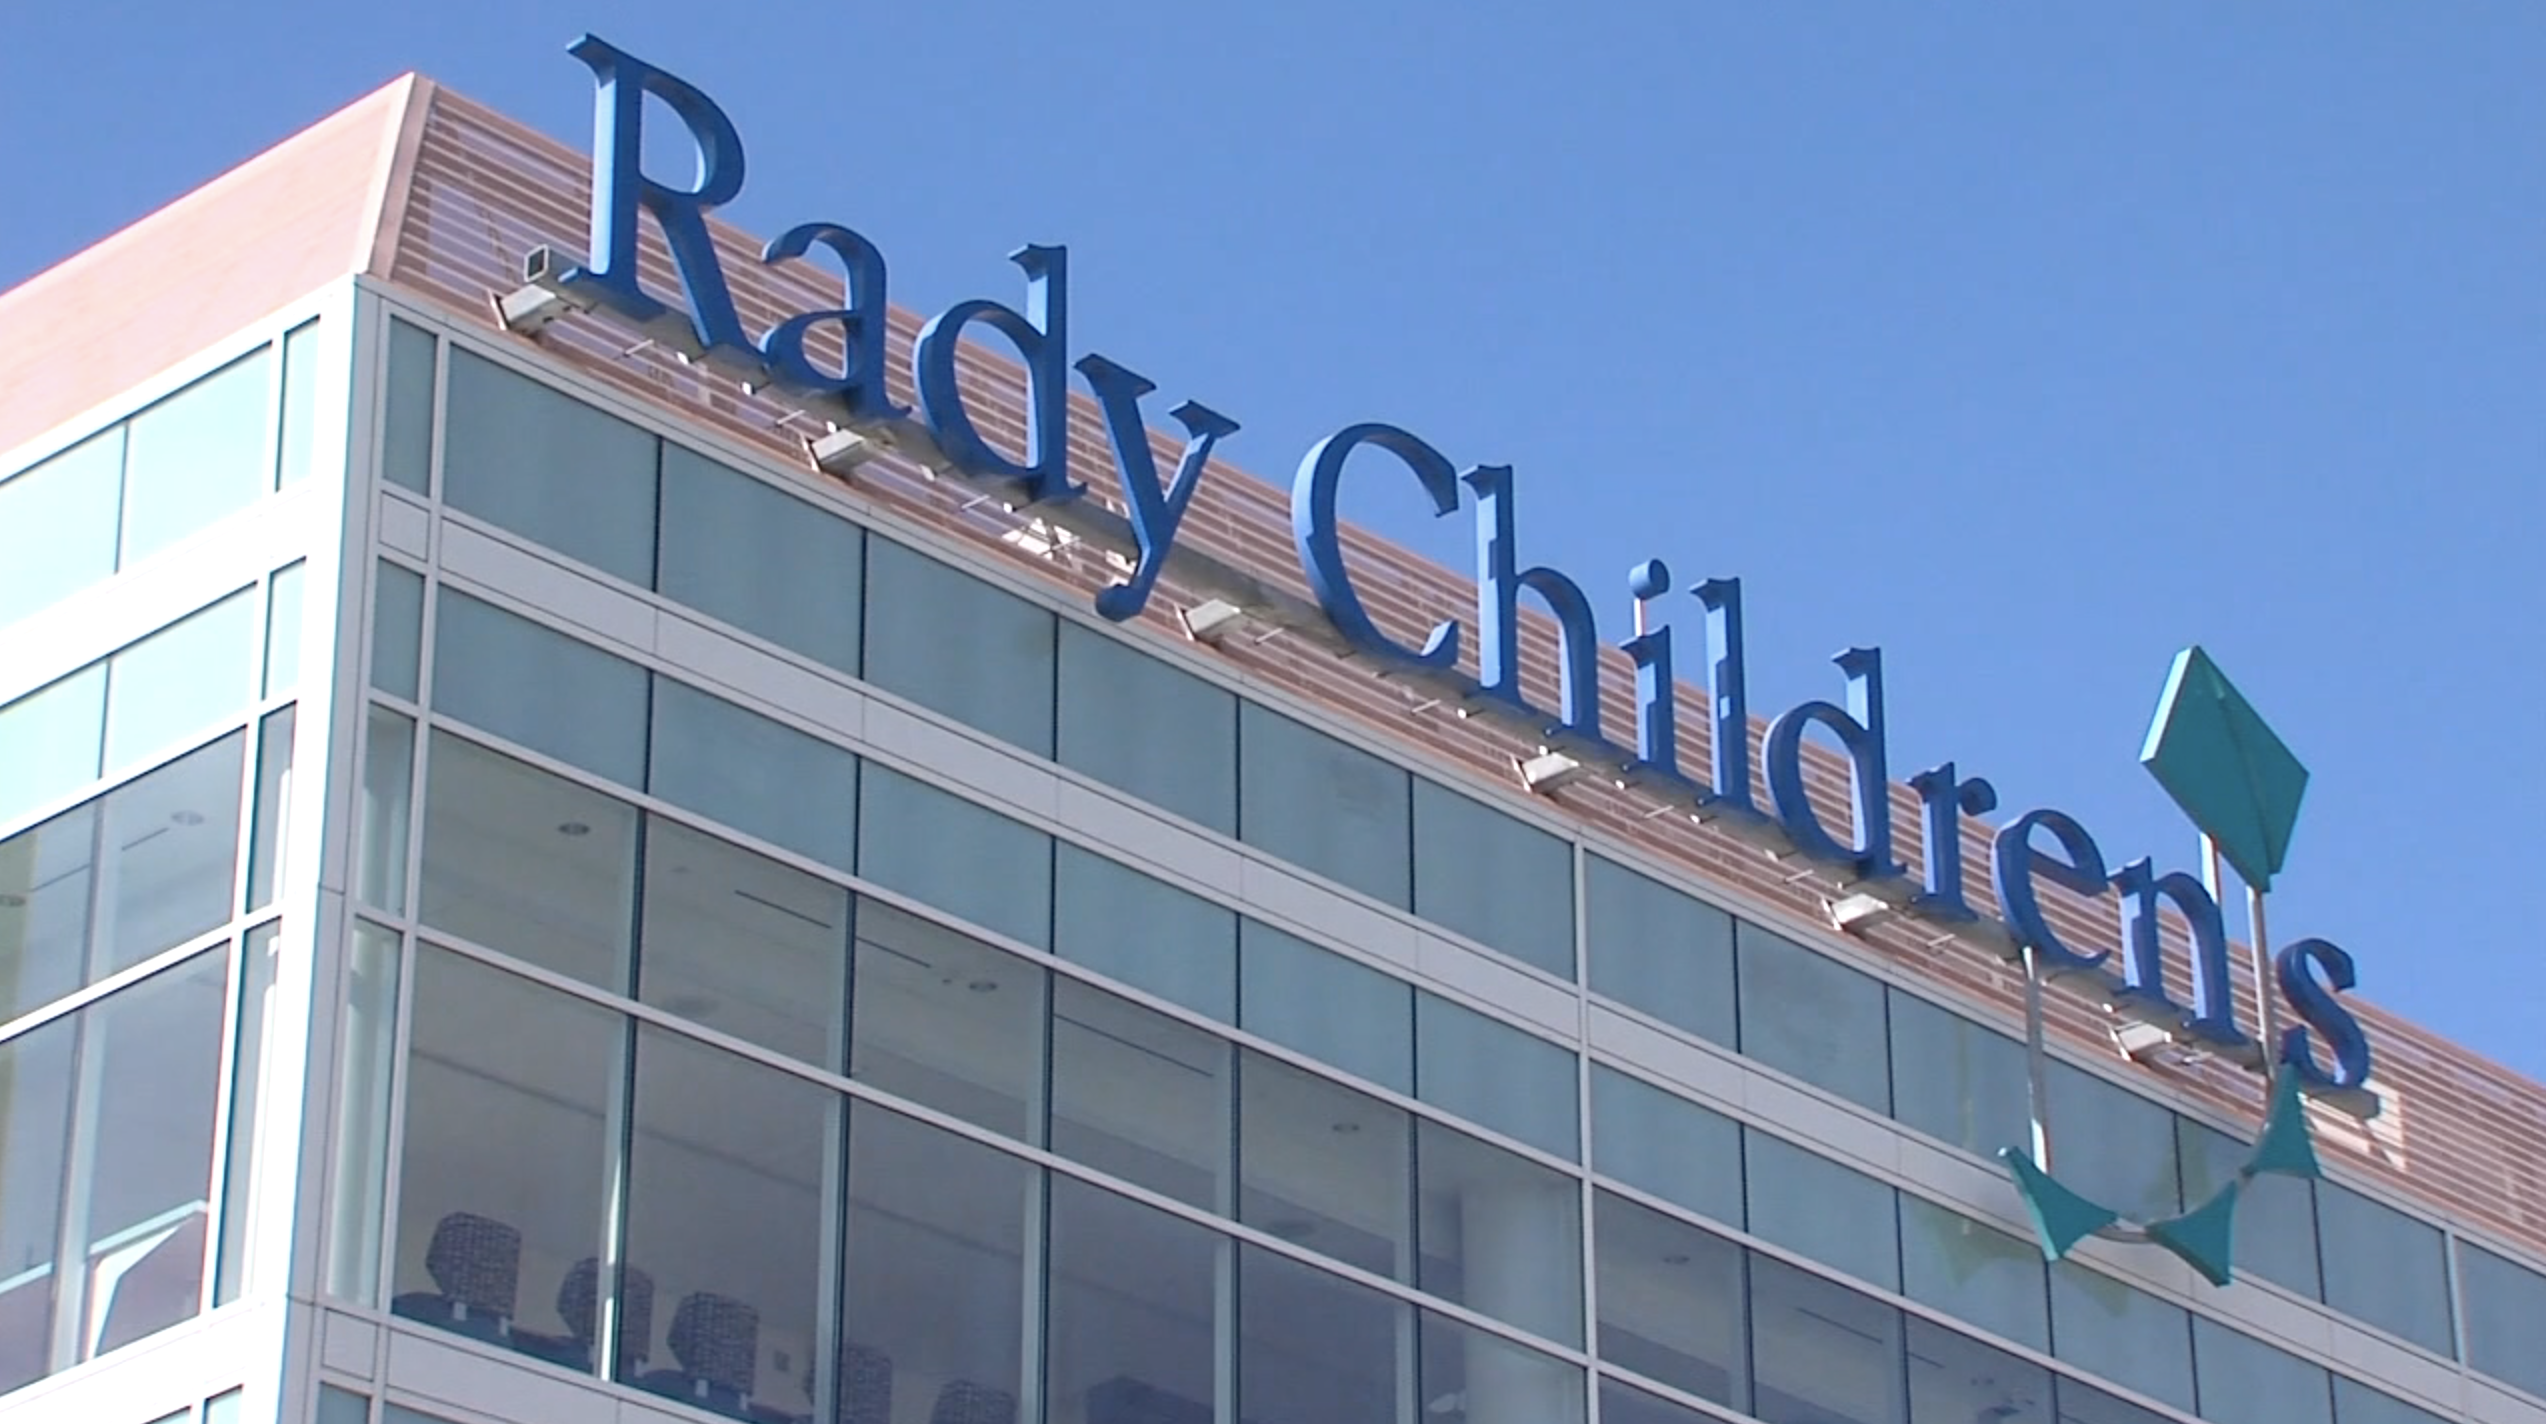 Rady Children's Hospital nurses to strike beginning July 22